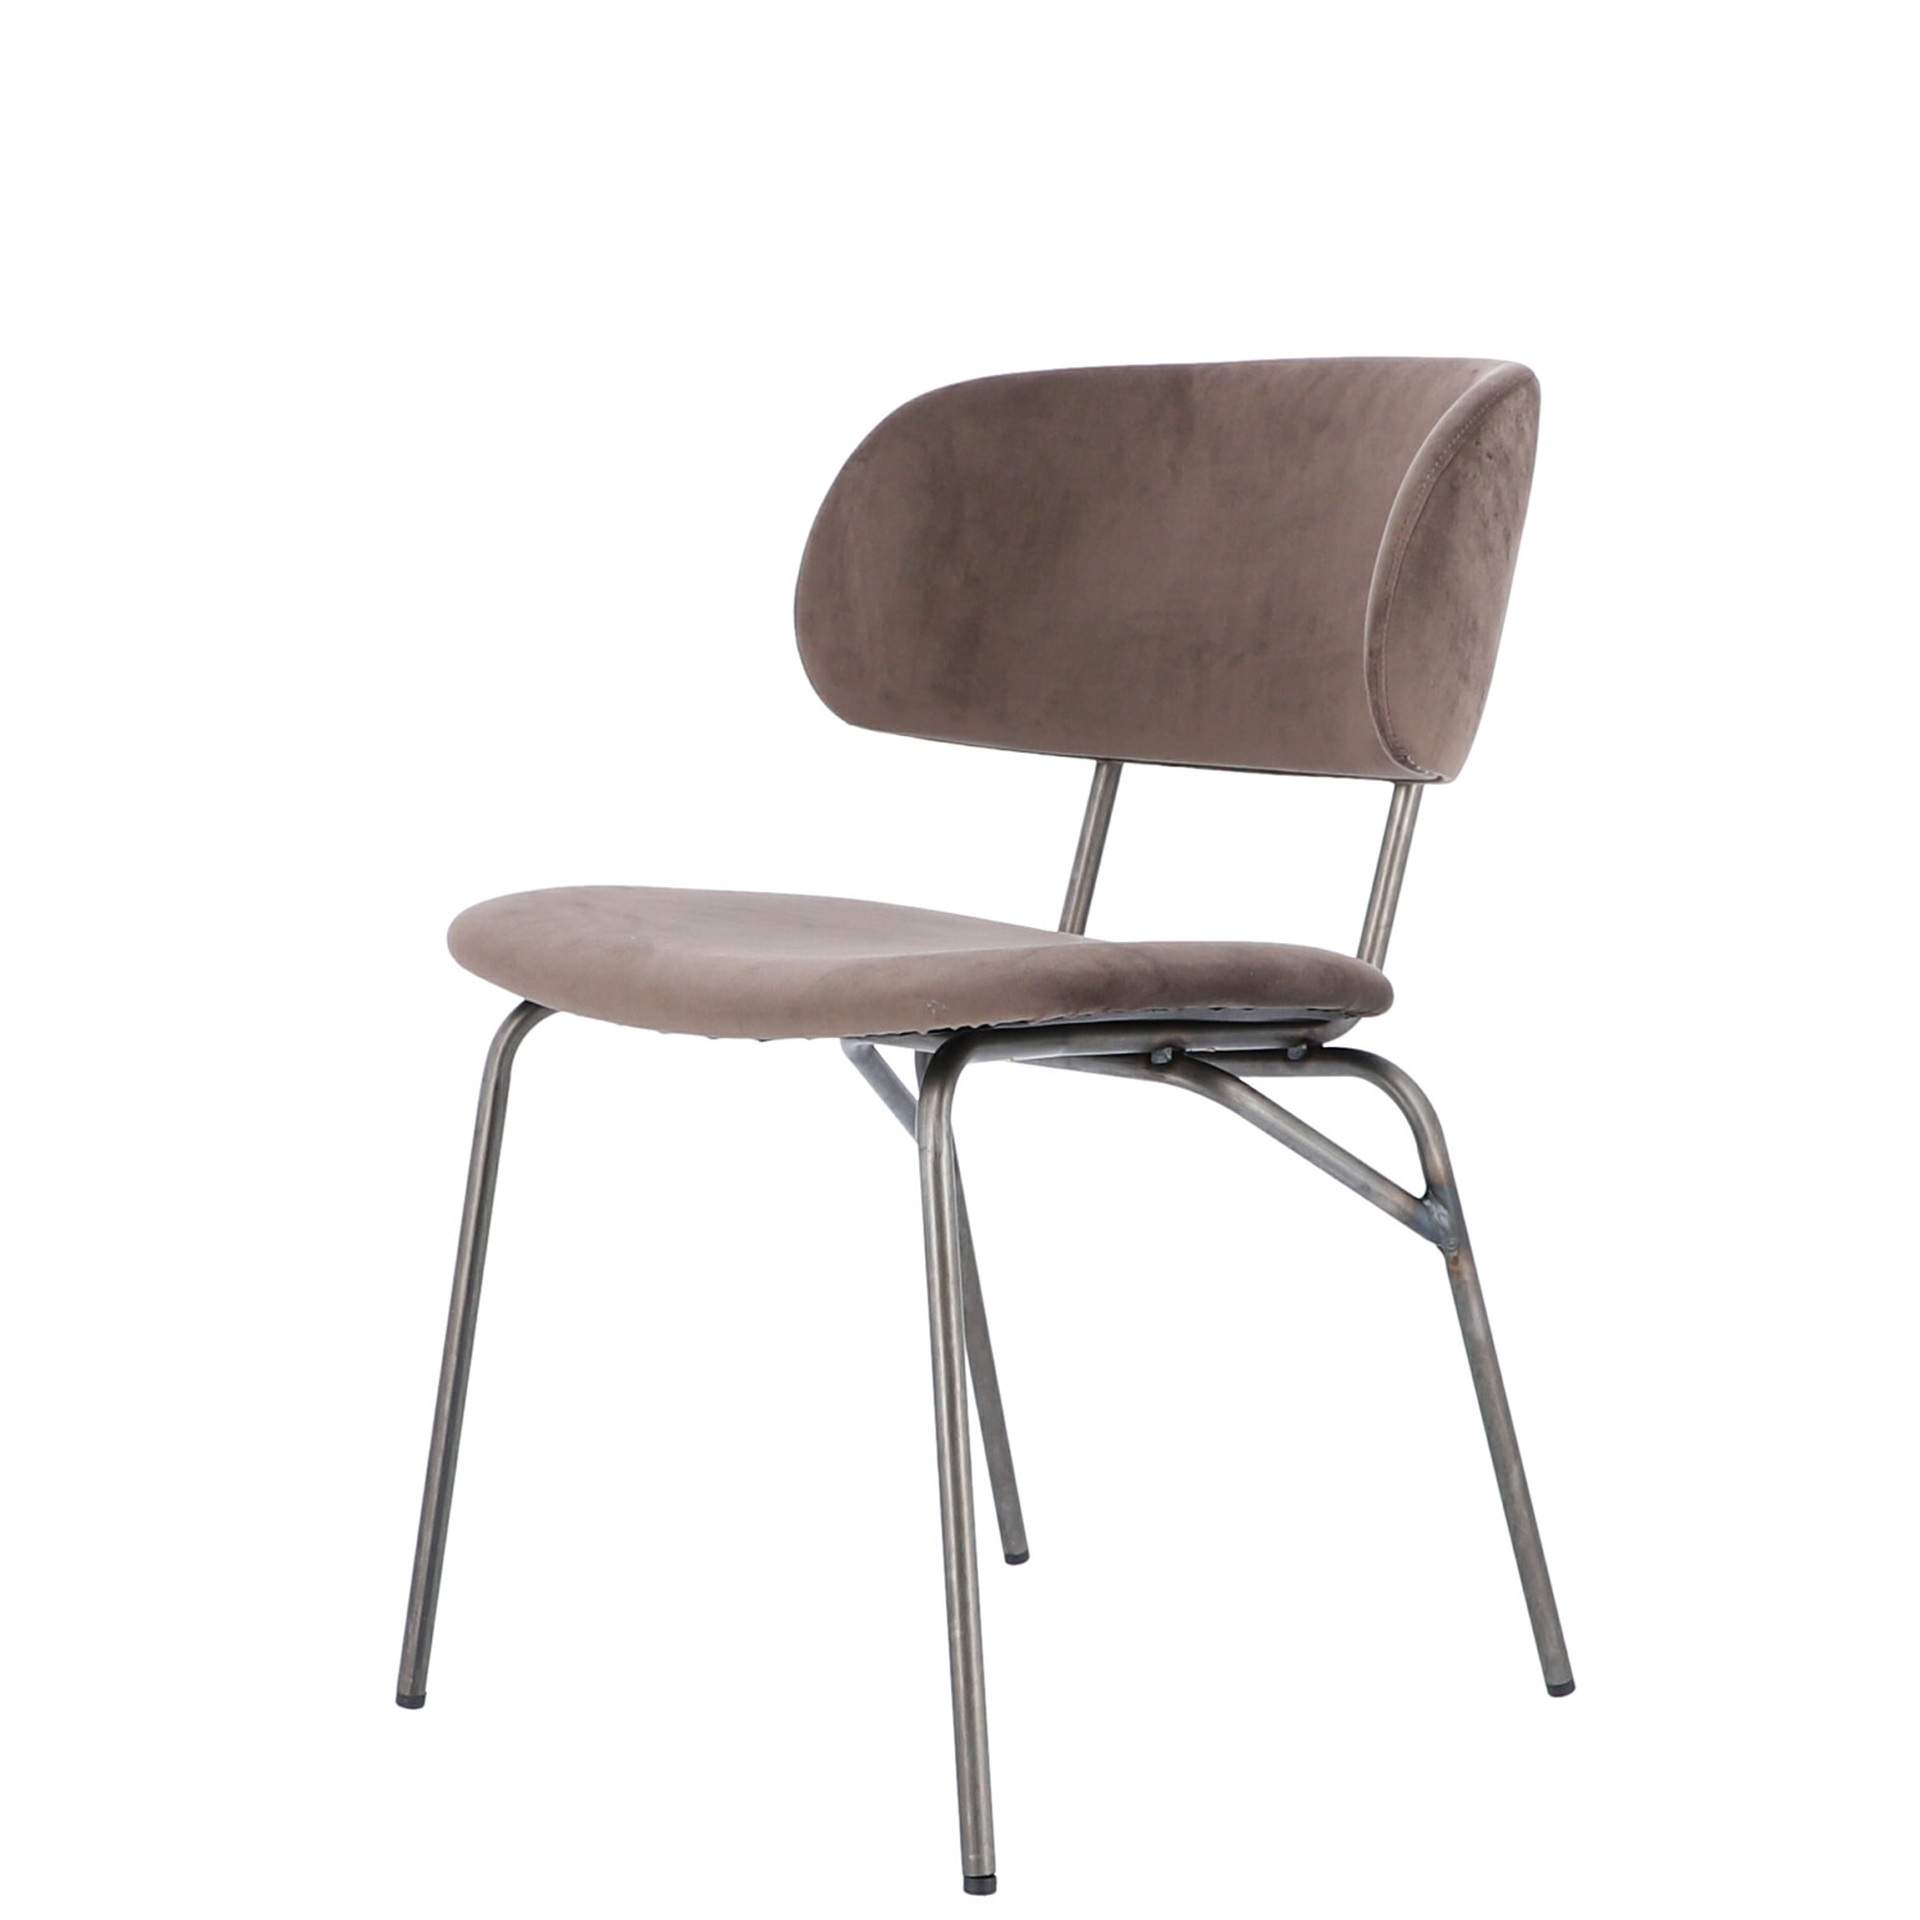 Der moderne Stuhl Giulia wurde aus einem Metall Gestell gefertigt. Die Sitz- und Rückenfläche ist aus einem Samt Bezug. Der Stuhl hat eine Taupe Farbe und ist von der Marke Jan Kurtz.